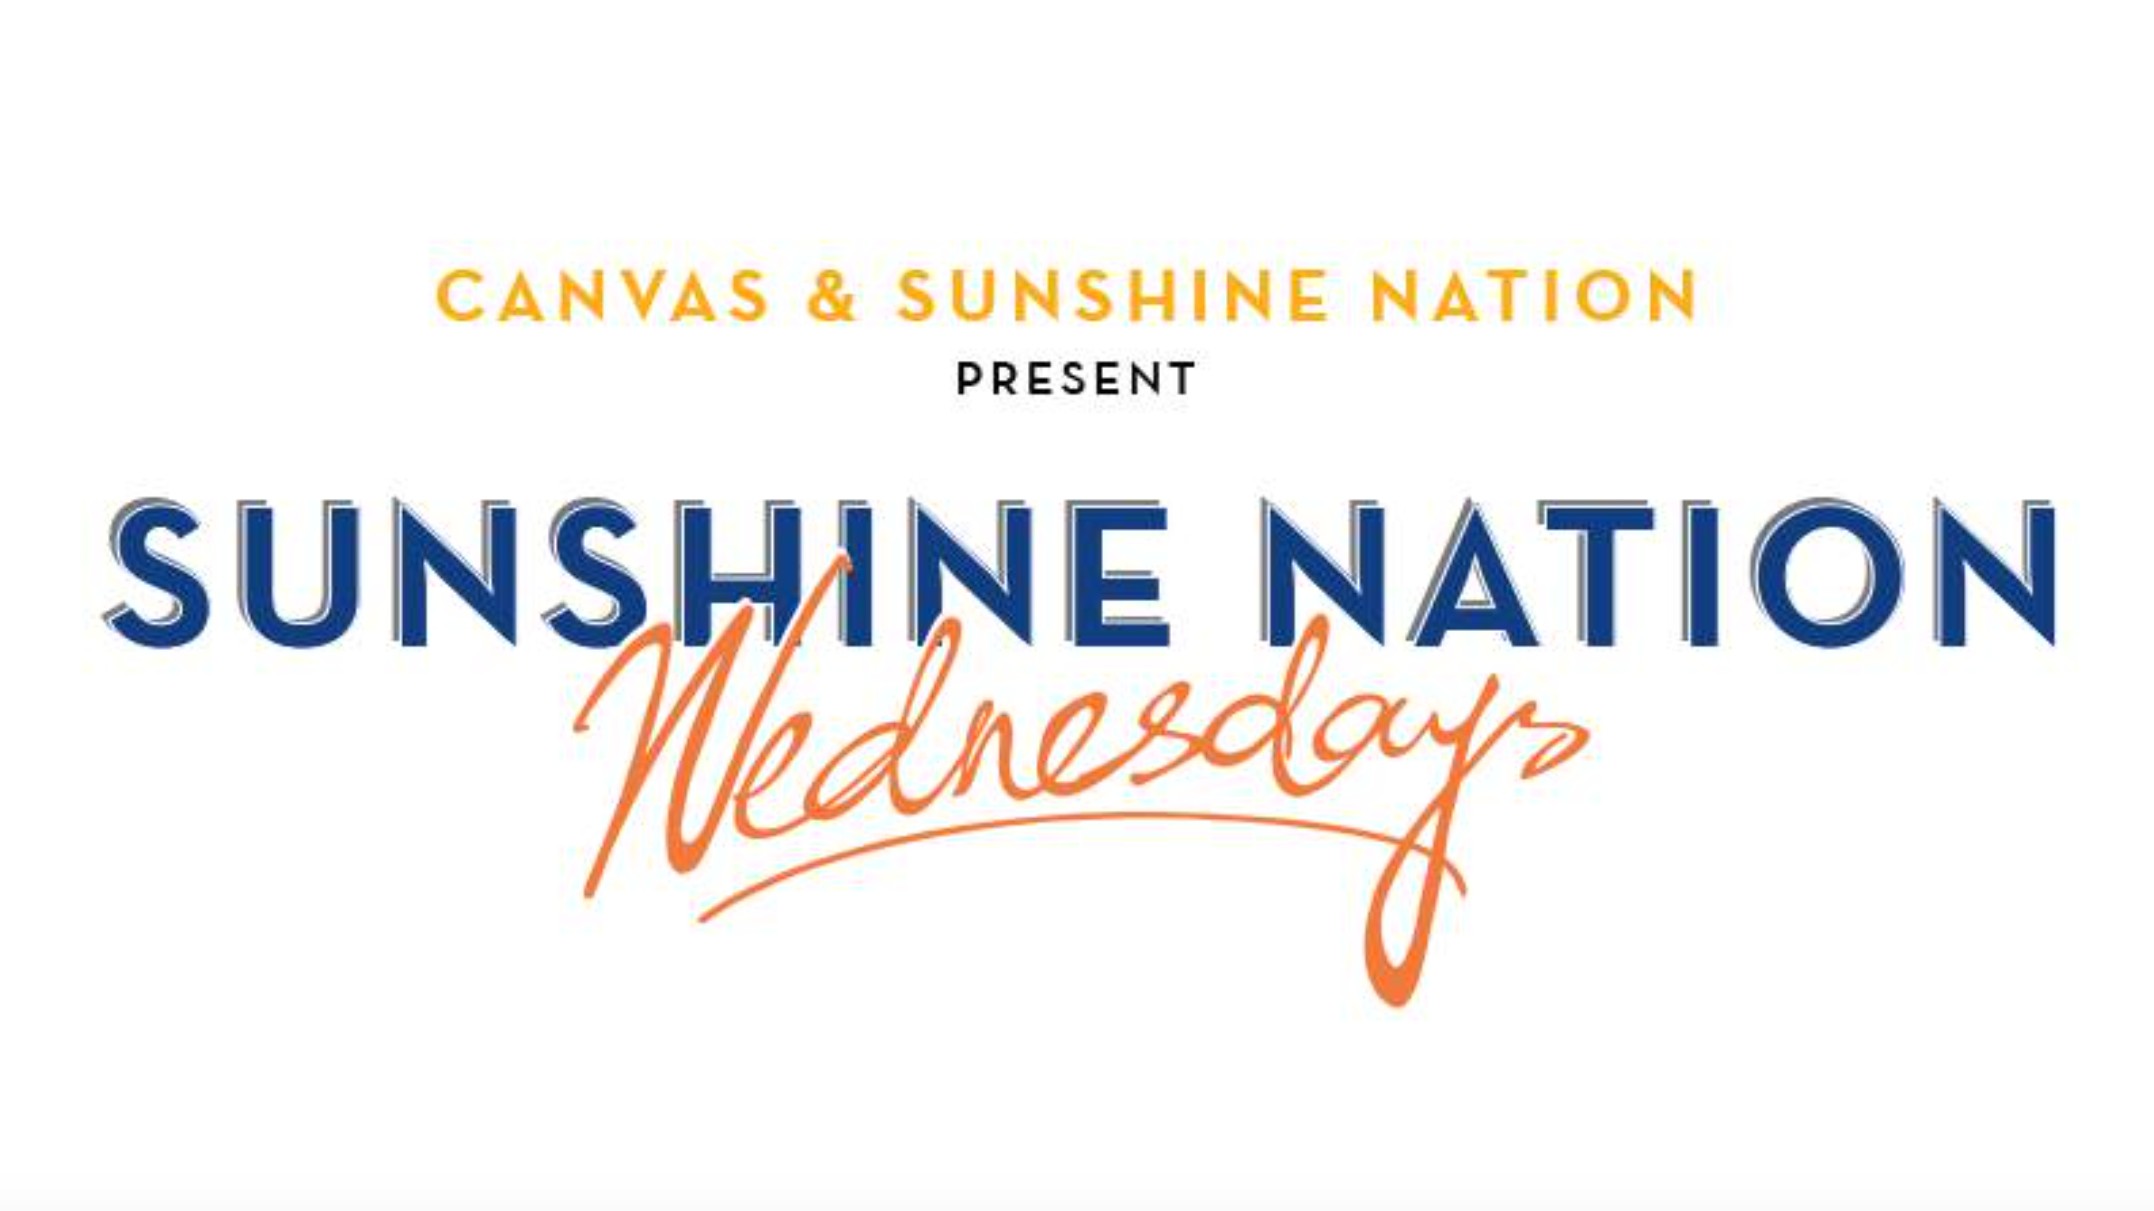 Sunshine Nation Wednesdays 